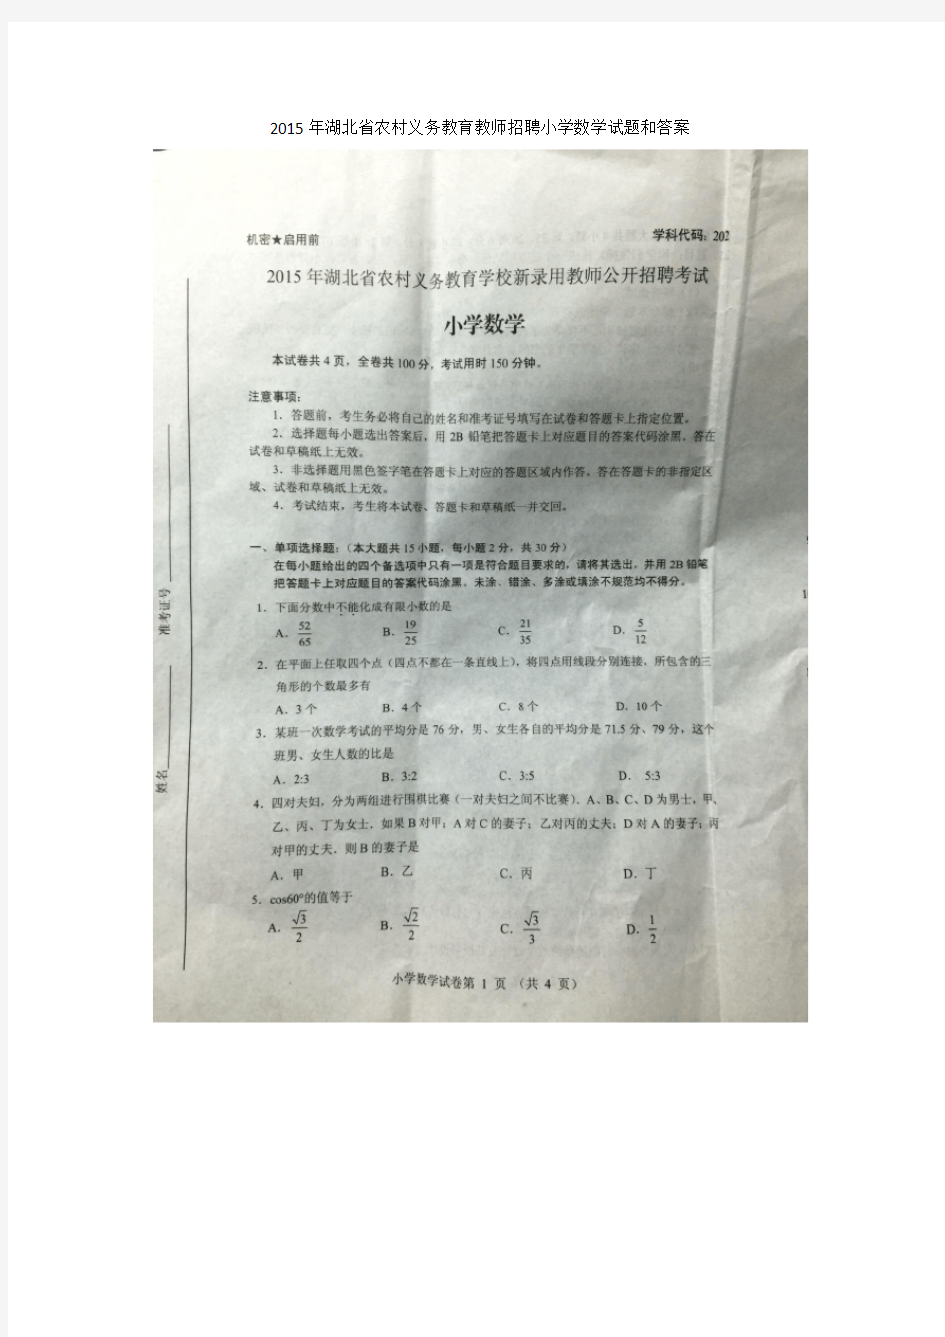 2015年湖北省农村义务教育教师招聘小学数学试题和答案(真题)解析